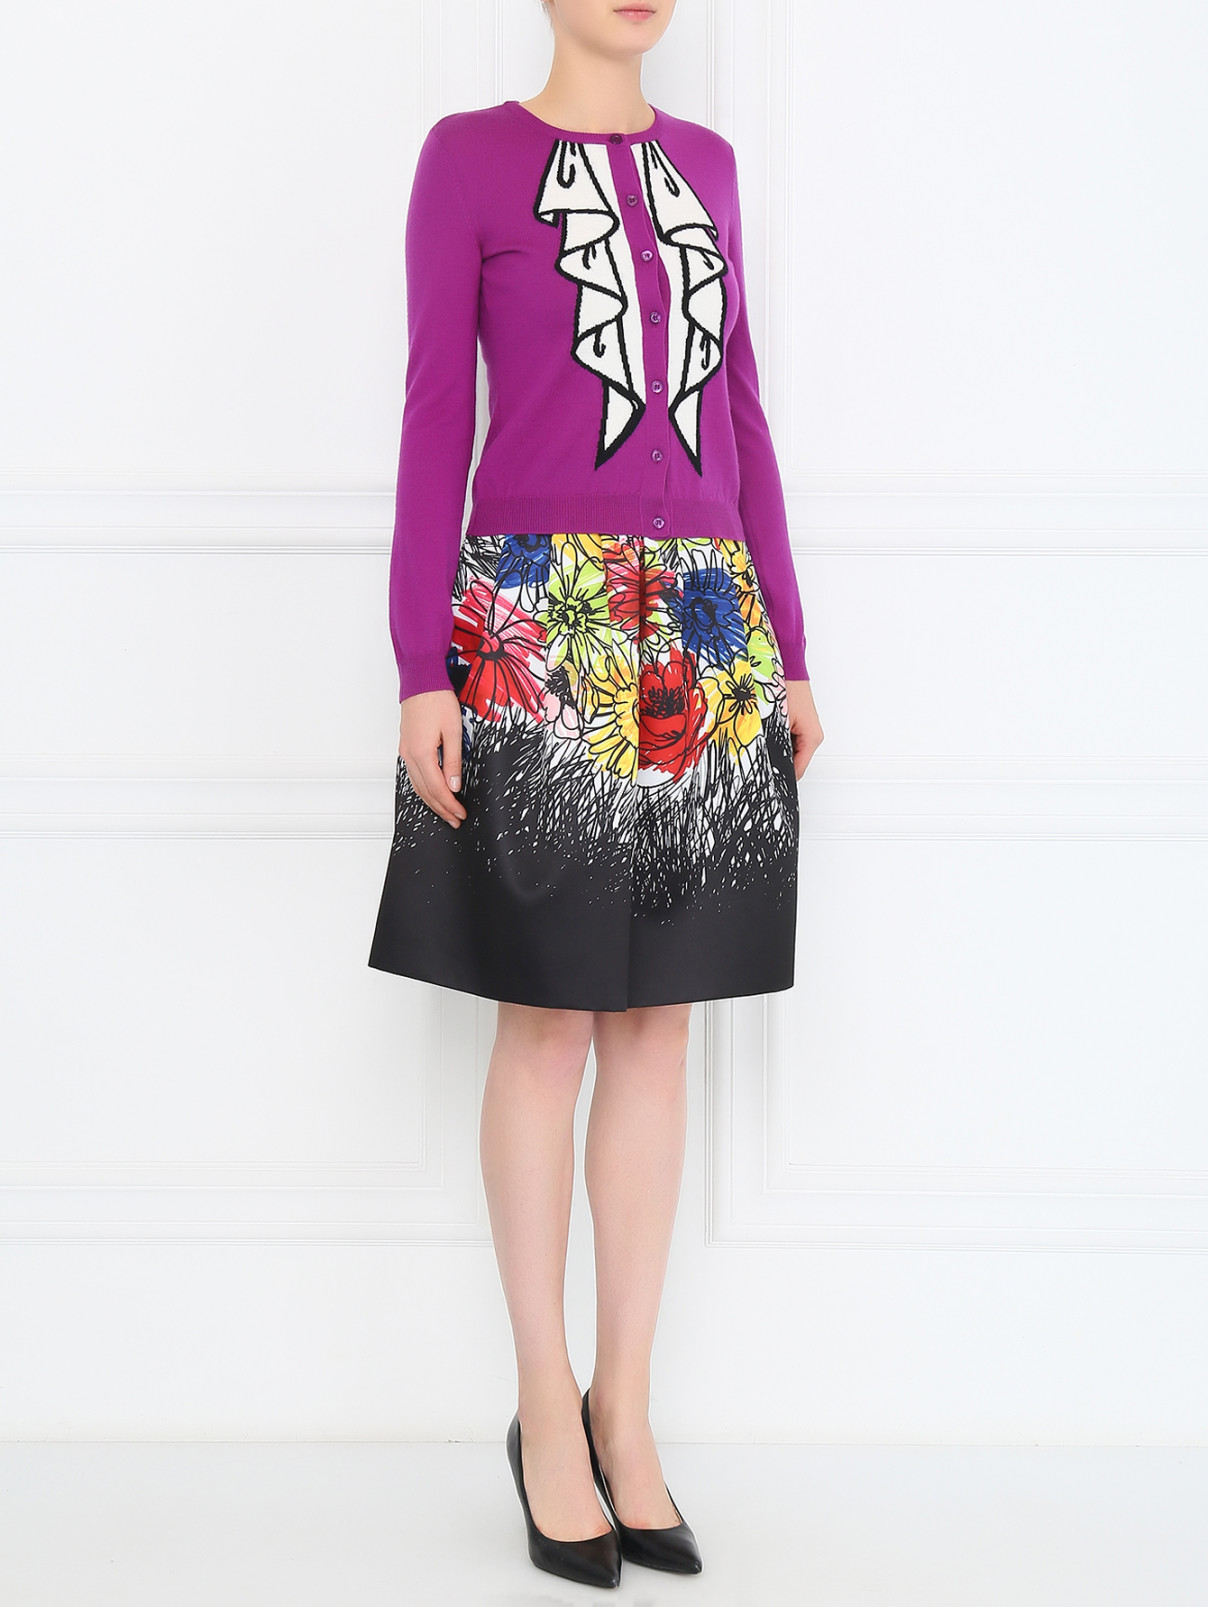 Кардиган из шерсти с принтом Moschino Boutique  –  Модель Общий вид  – Цвет:  Фиолетовый